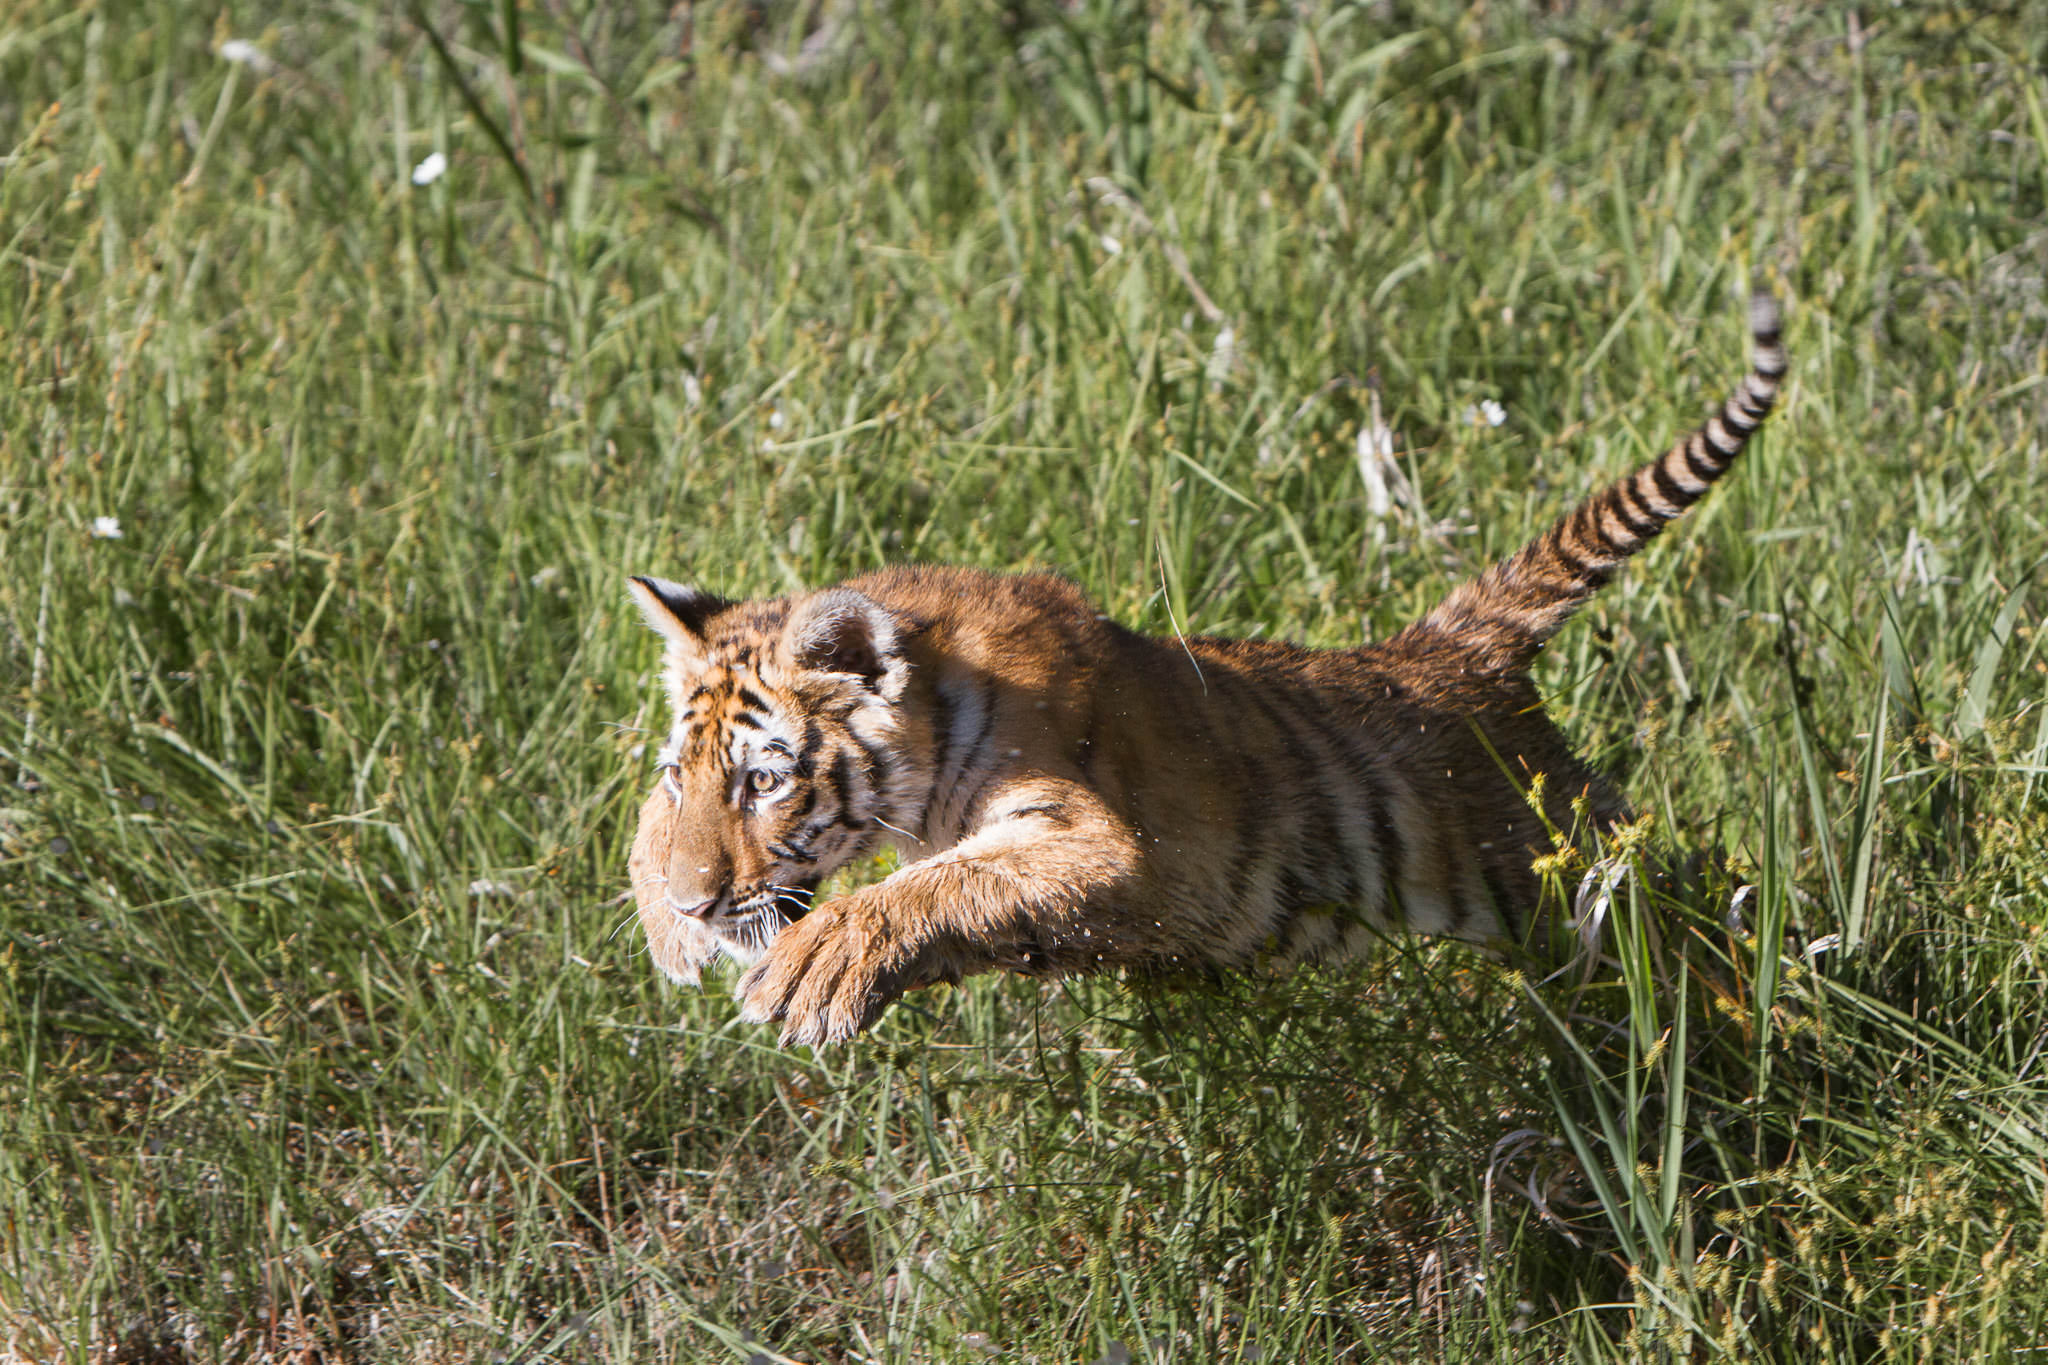  Tiger cub #20130707_0561 